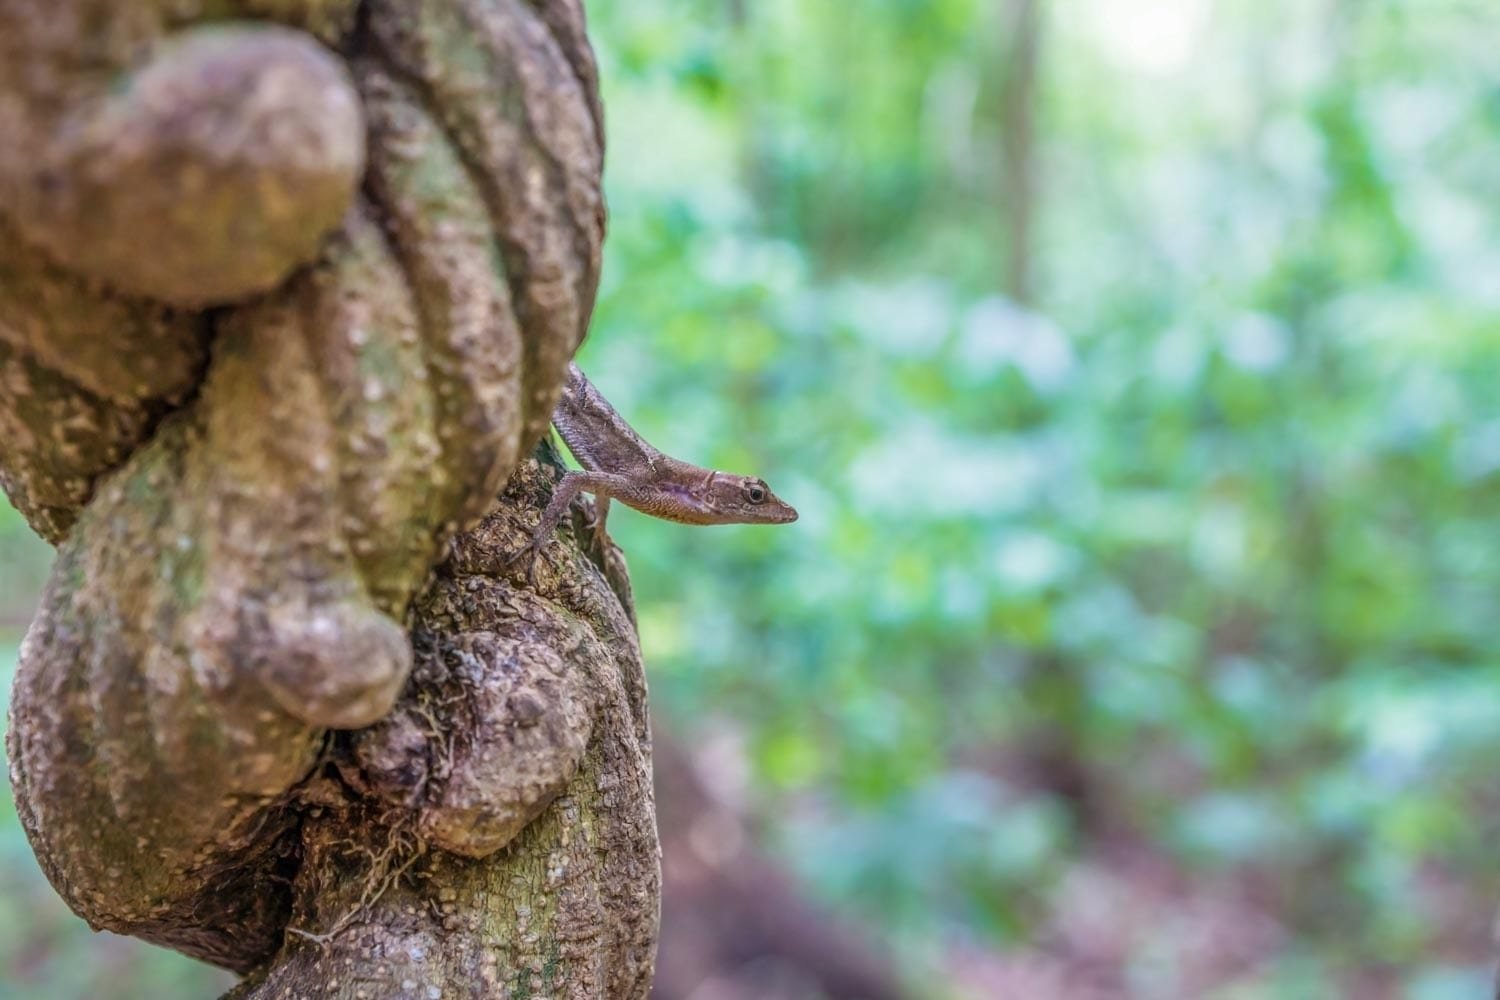 Landed-Travel-Lizard-Liana-Tikal-Guatemala